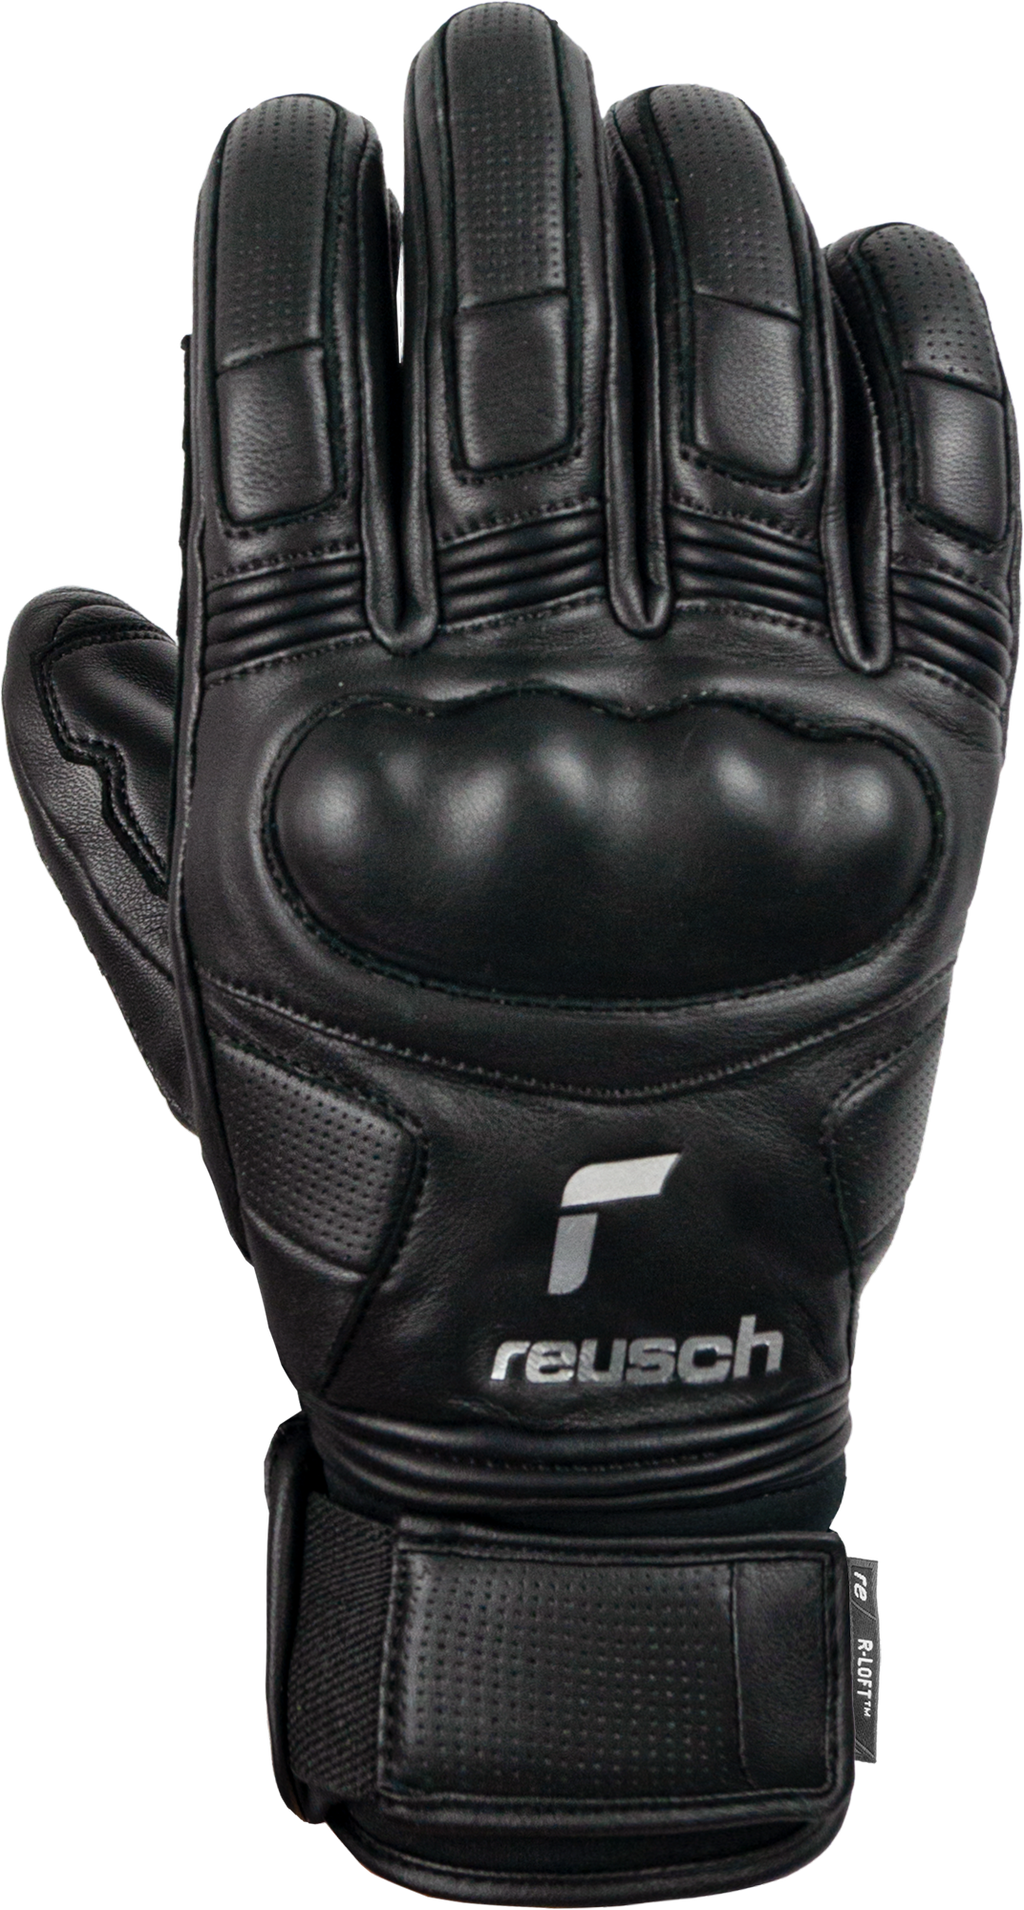 Reusch Overlord - 62 01 105 – Reusch Winter